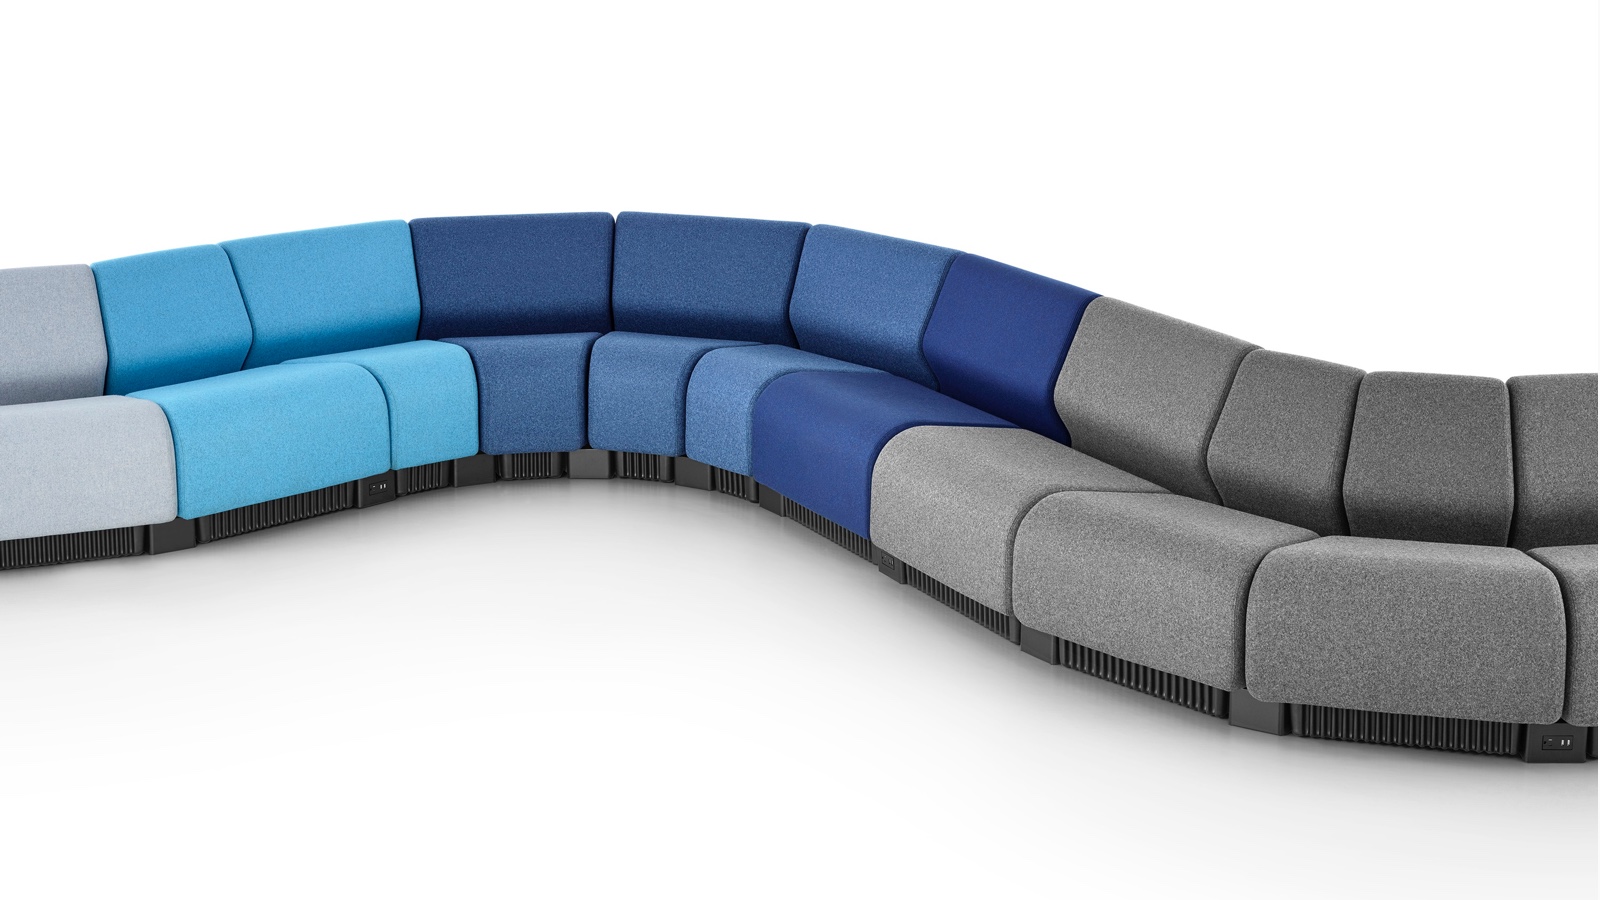 深浅不同的灰色和蓝色Chadwick模块化座椅模块构成一道蜿蜒的蛇形座椅配置。